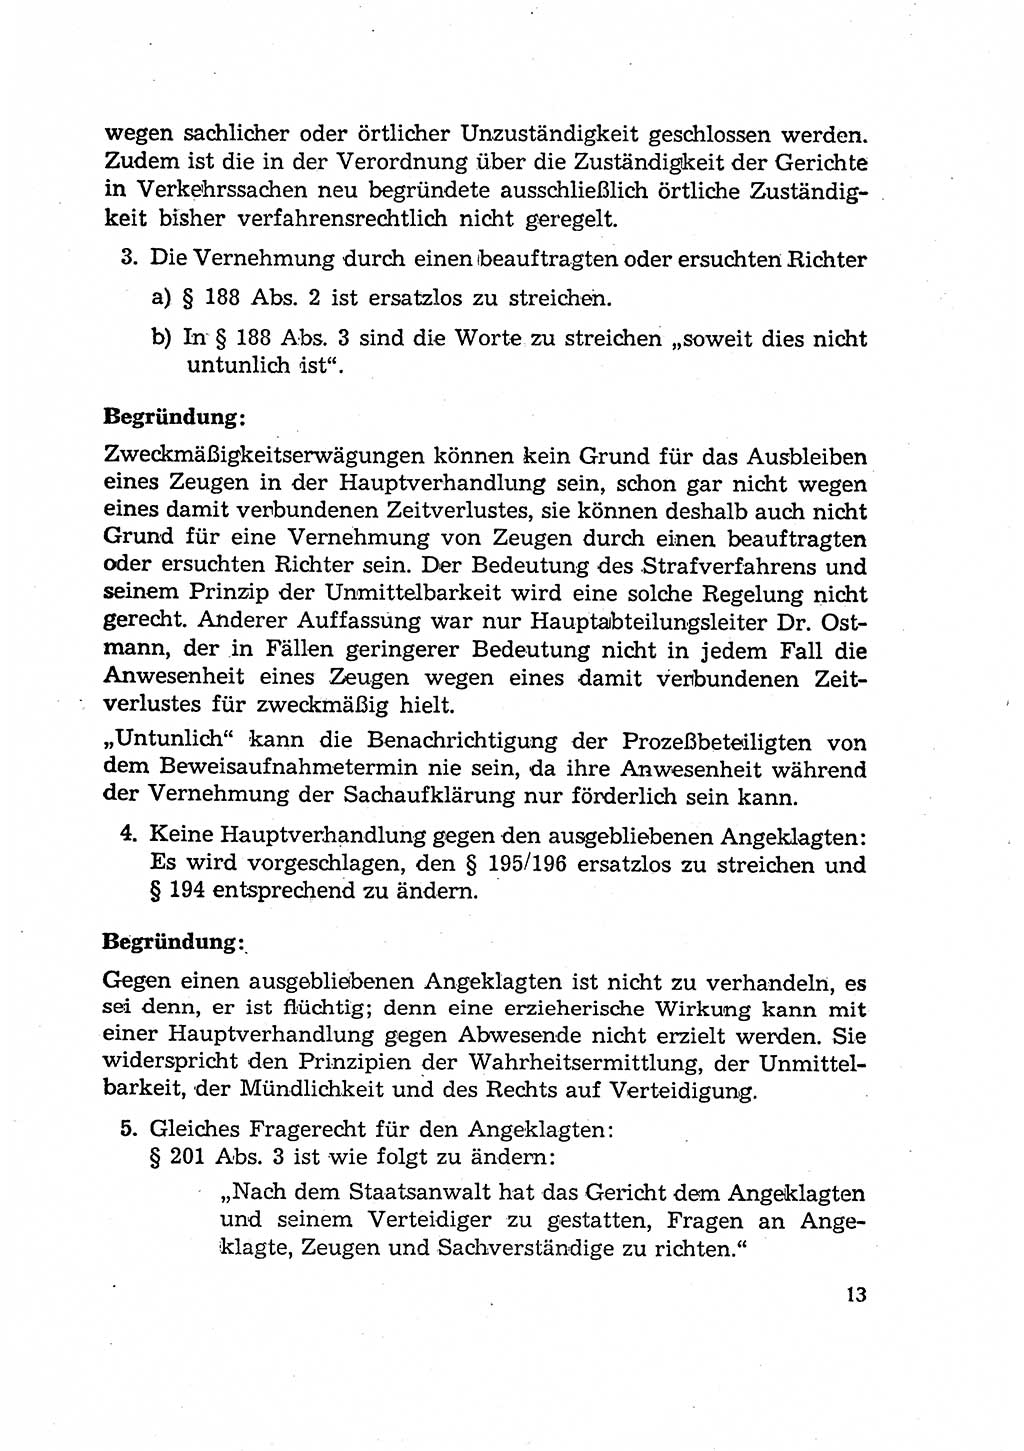 Bericht der Kommission zur Überprüfung der Anwendung der StPO (Strafprozeßordnung) [Deutsche Demokratische Republik (DDR)] 1956, Seite 13 (Ber. StPO DDR 1956, S. 13)